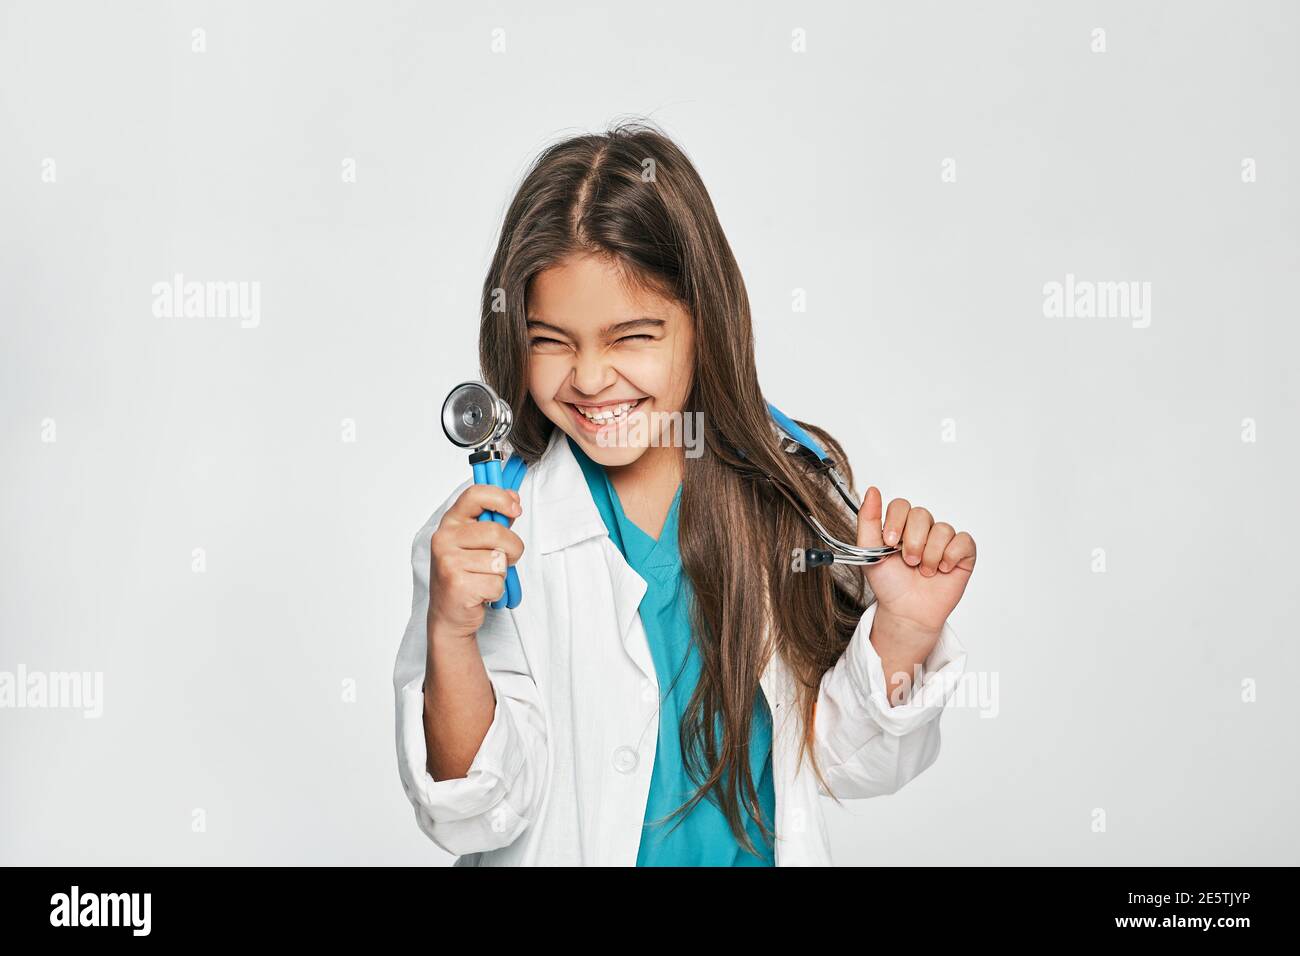 Porträt einer gemischten Rasse kleines Mädchen, gekleidet als Arzt mit Stethoskop in der Hand, sie posiert, lächelnd und schaut in die Kamera. Isoliert auf Weiß Stockfoto